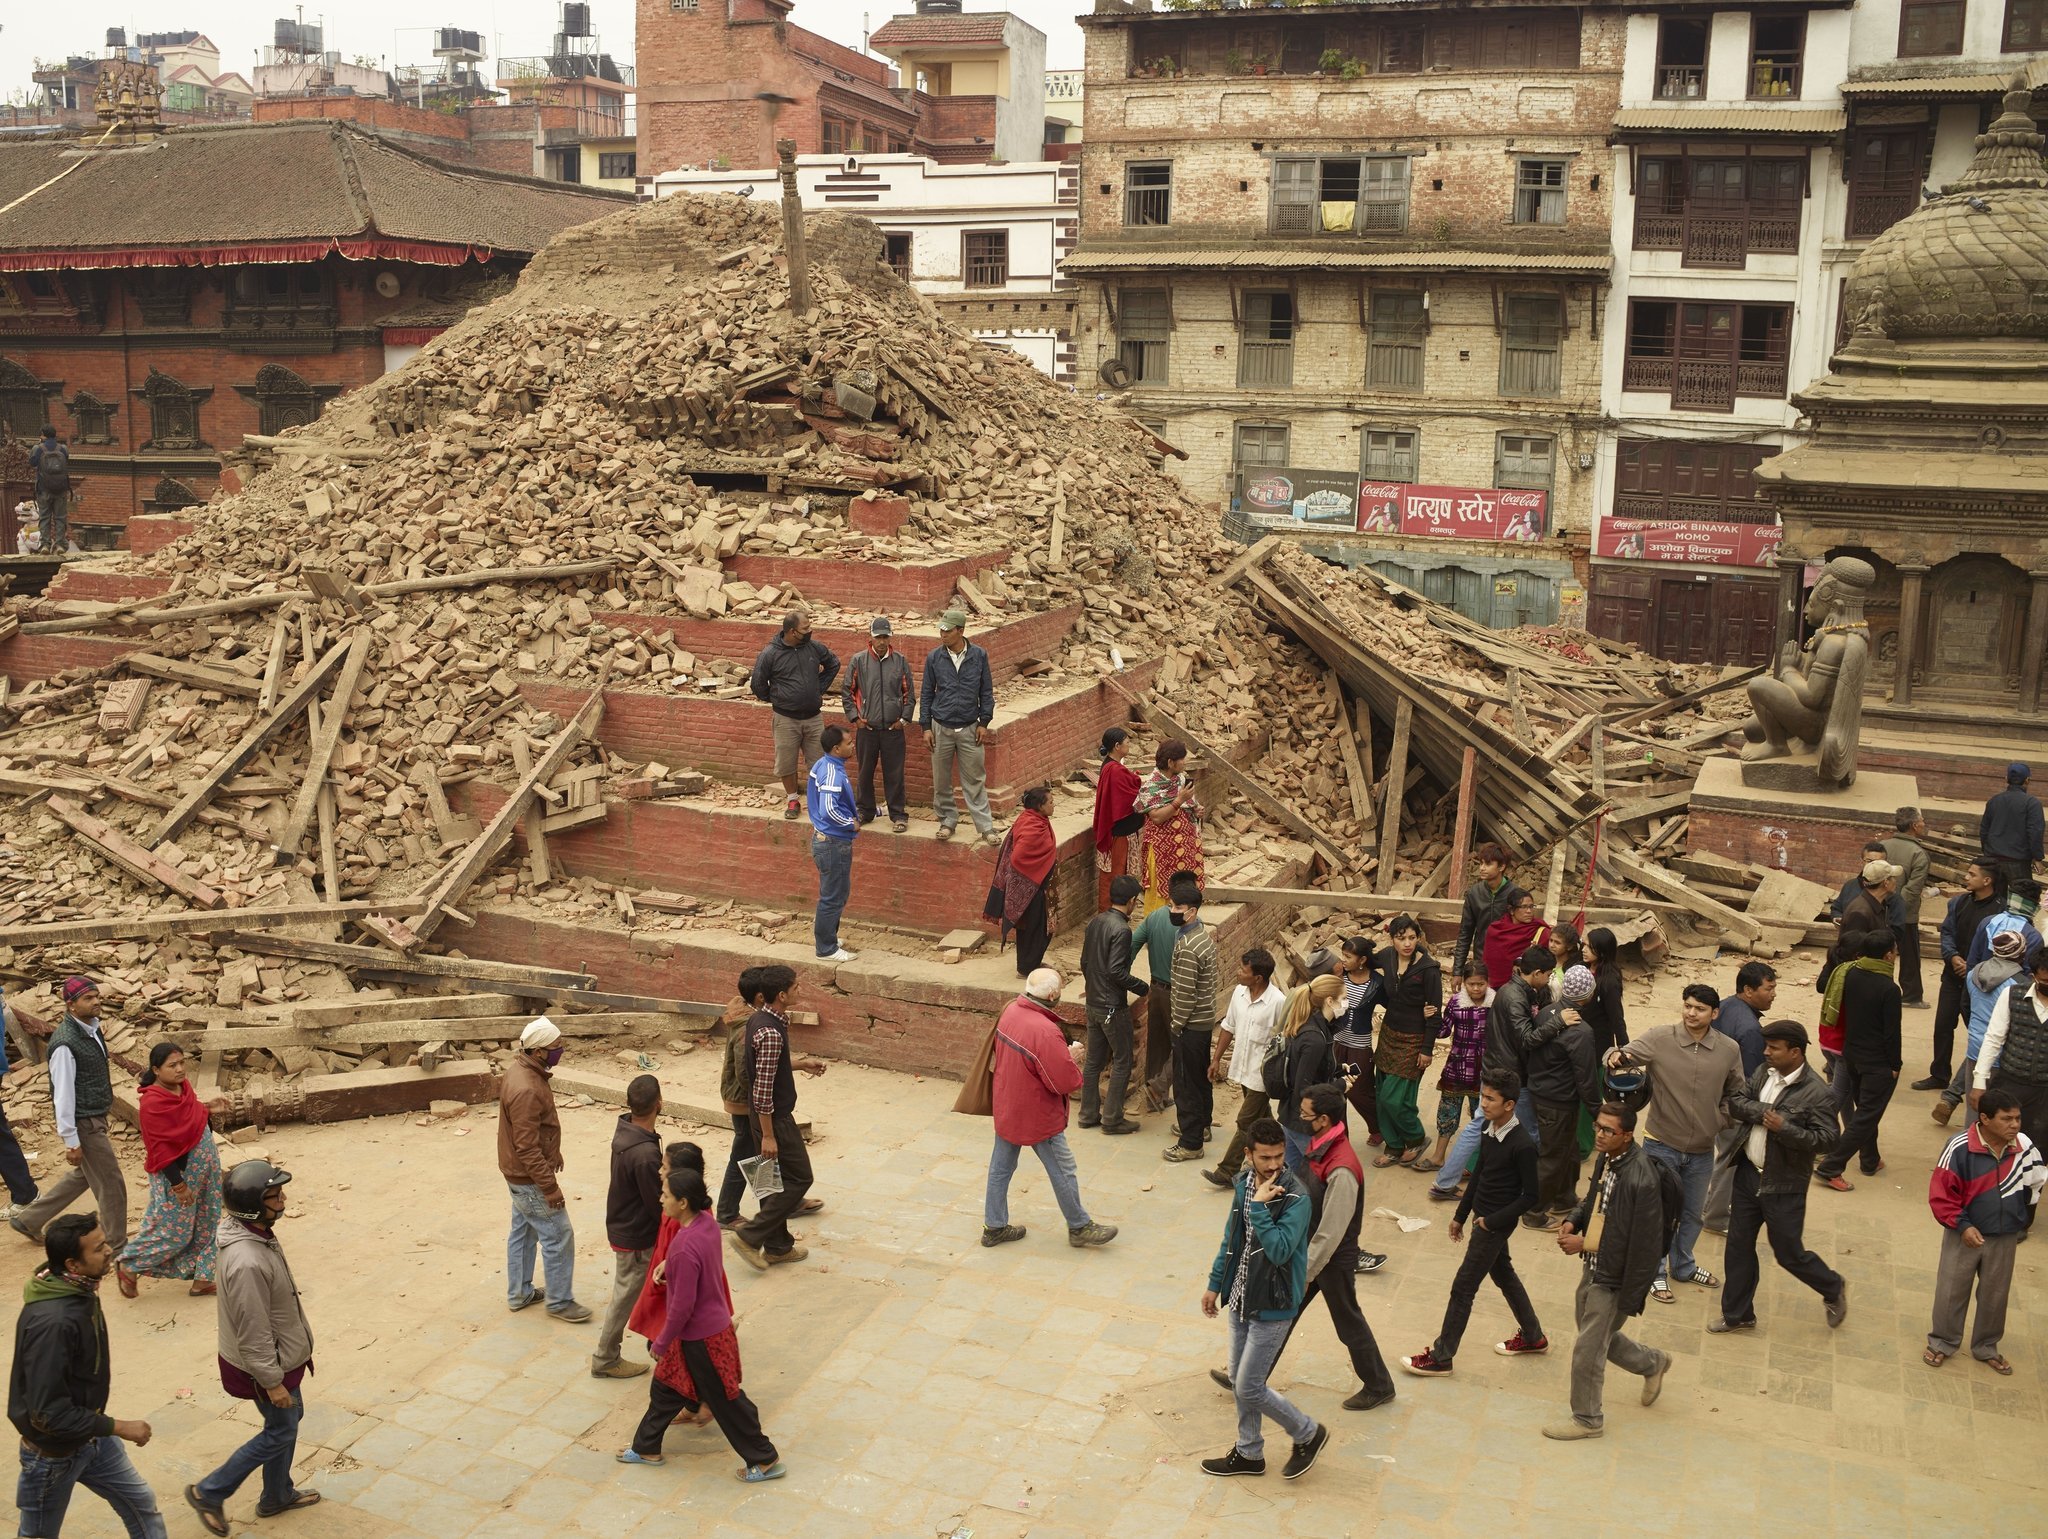 Budhanilakantha temple reconstruction hits snag